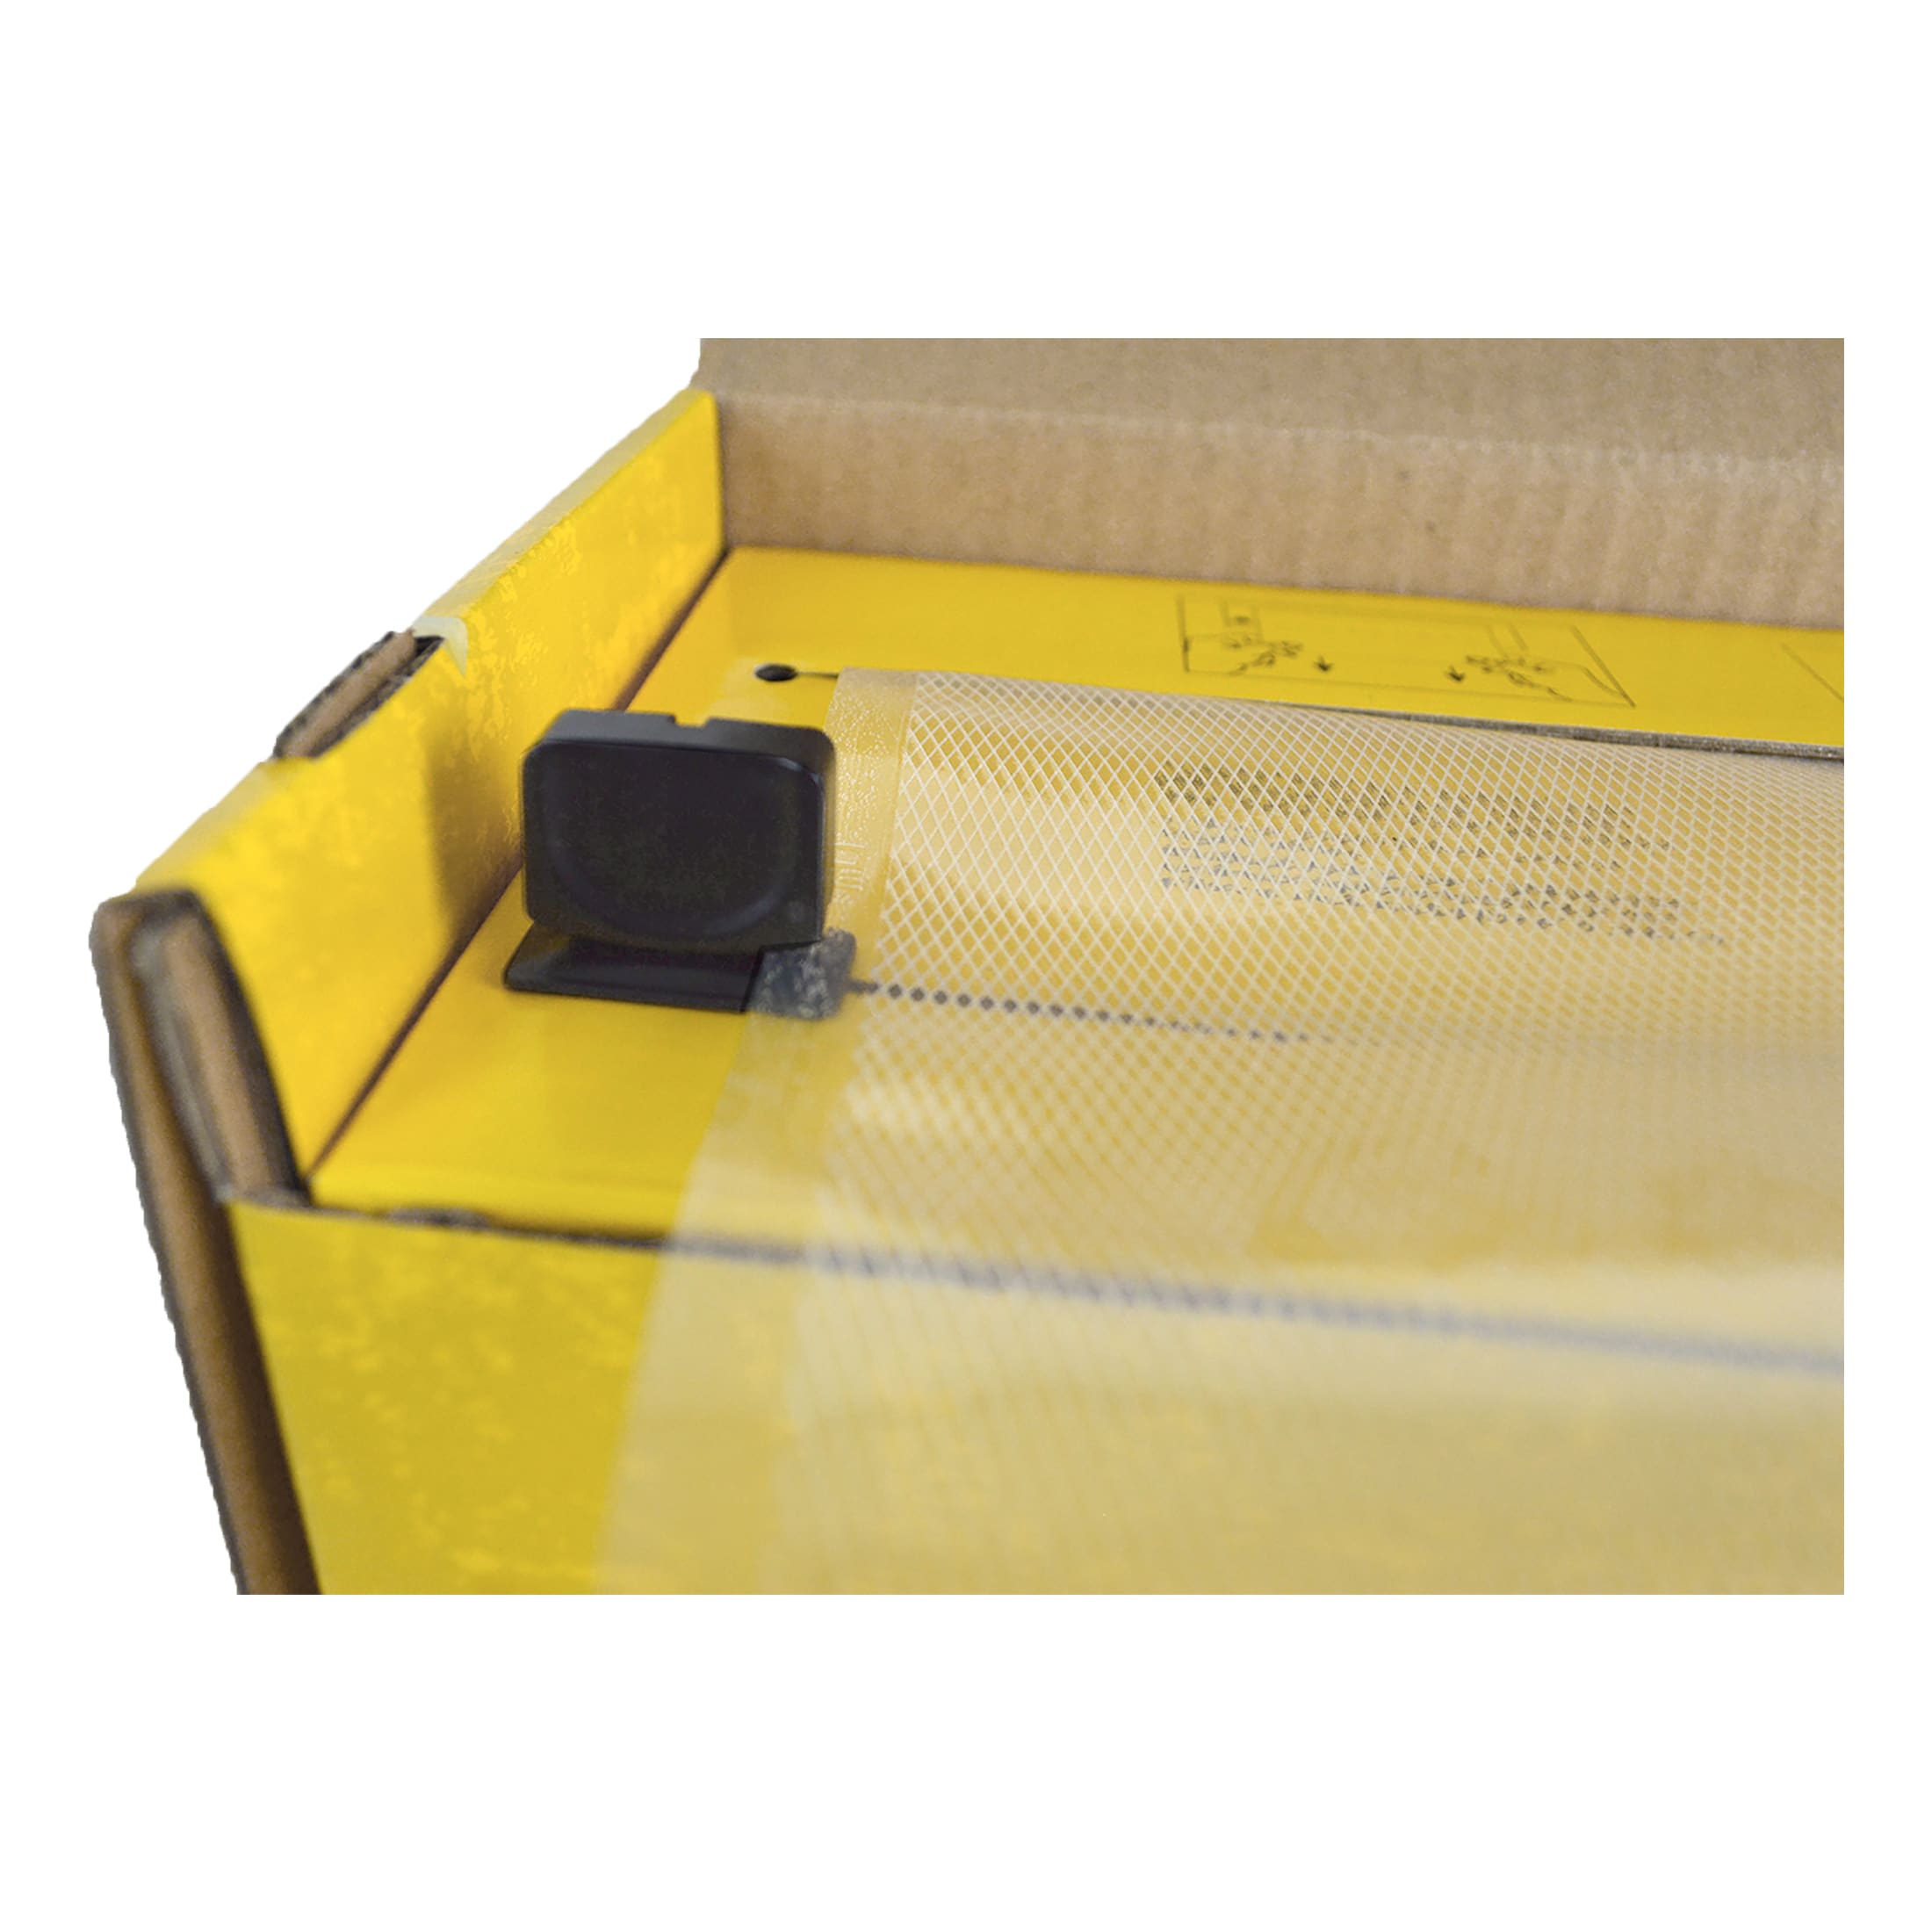 Cabela's® Roll Cutter Box Vacuum Bags - Built-In Cutter